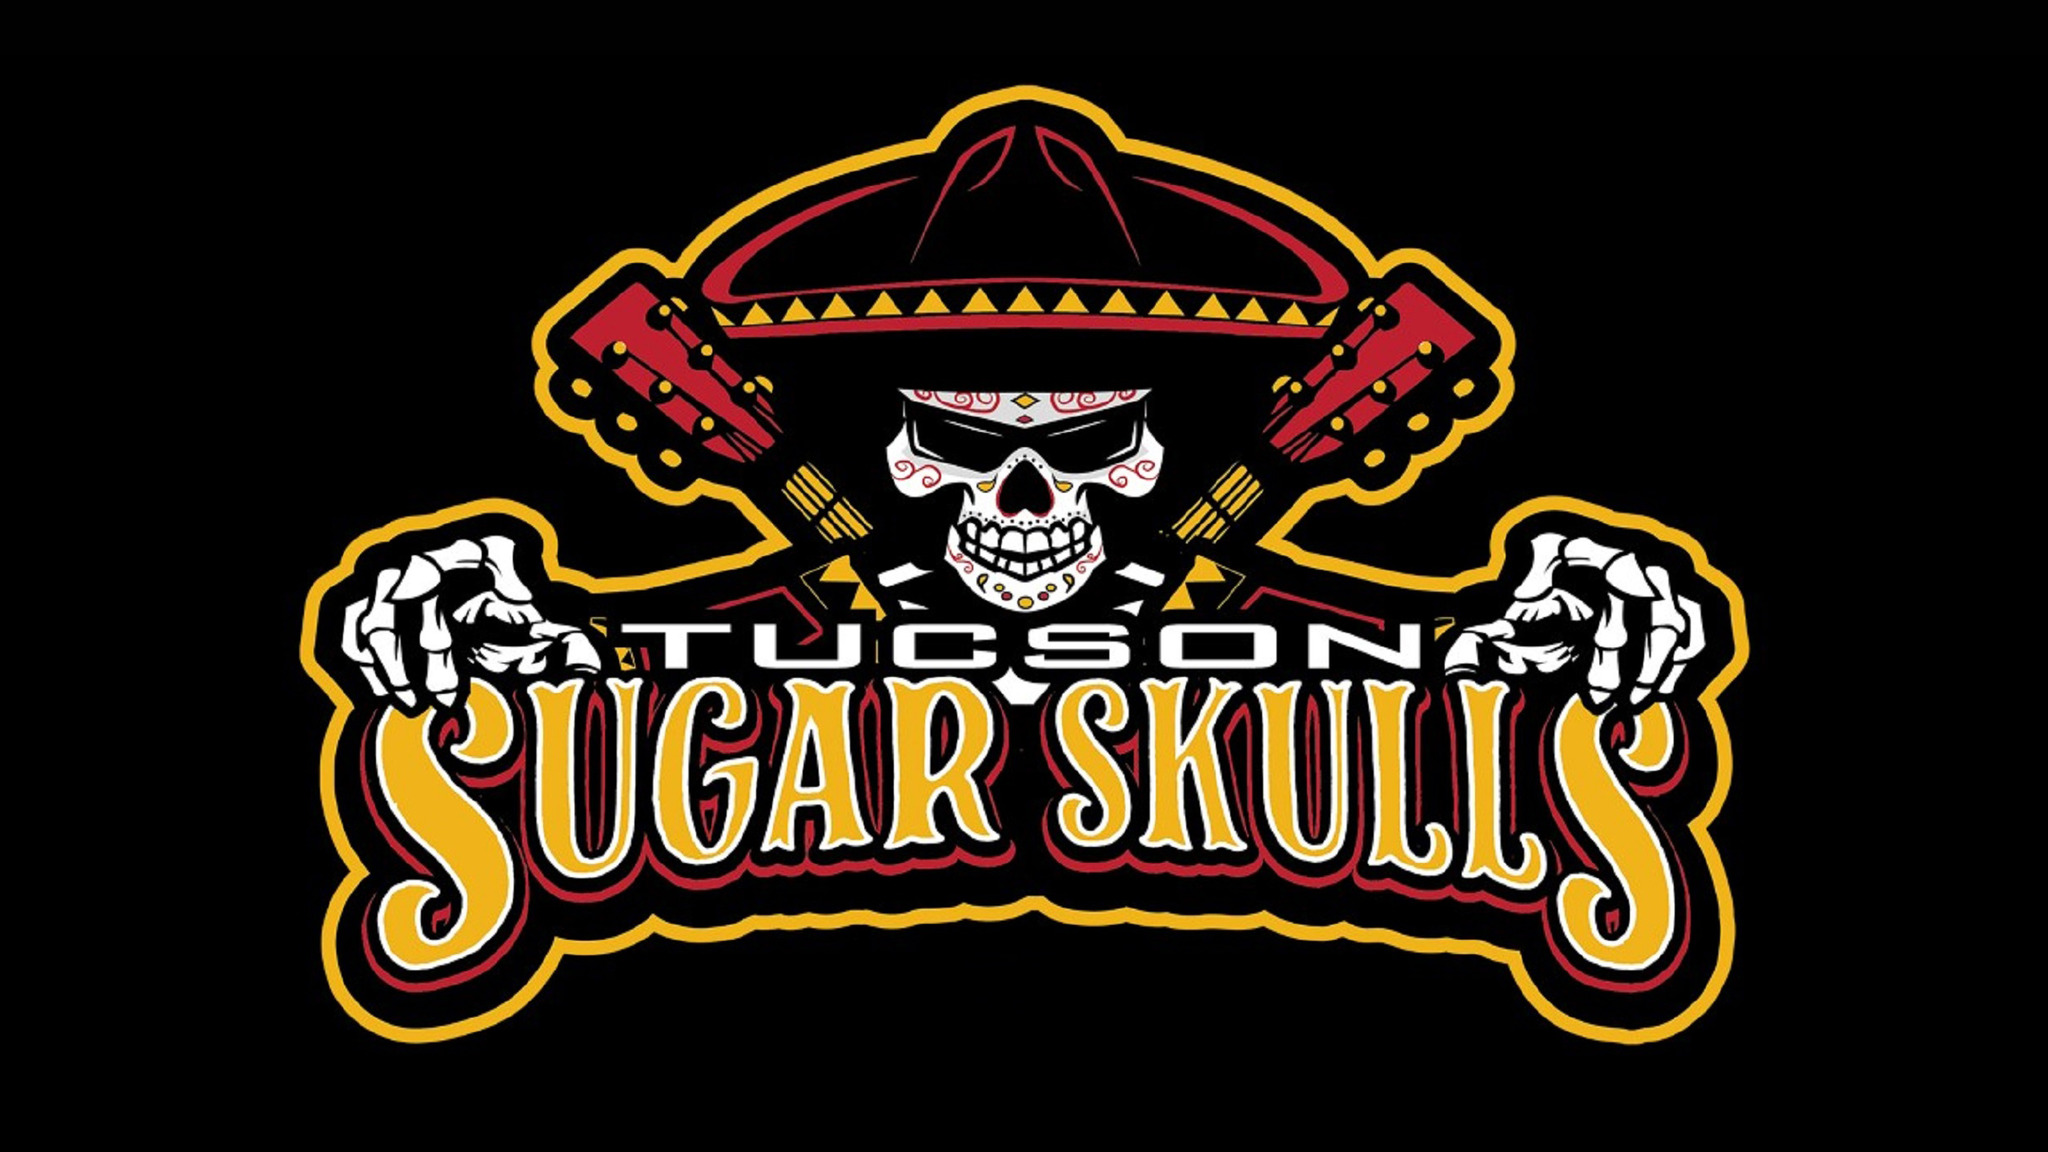 Tucson Sugar Skulls Tickets 20222023 Professional Tickets & Schedule